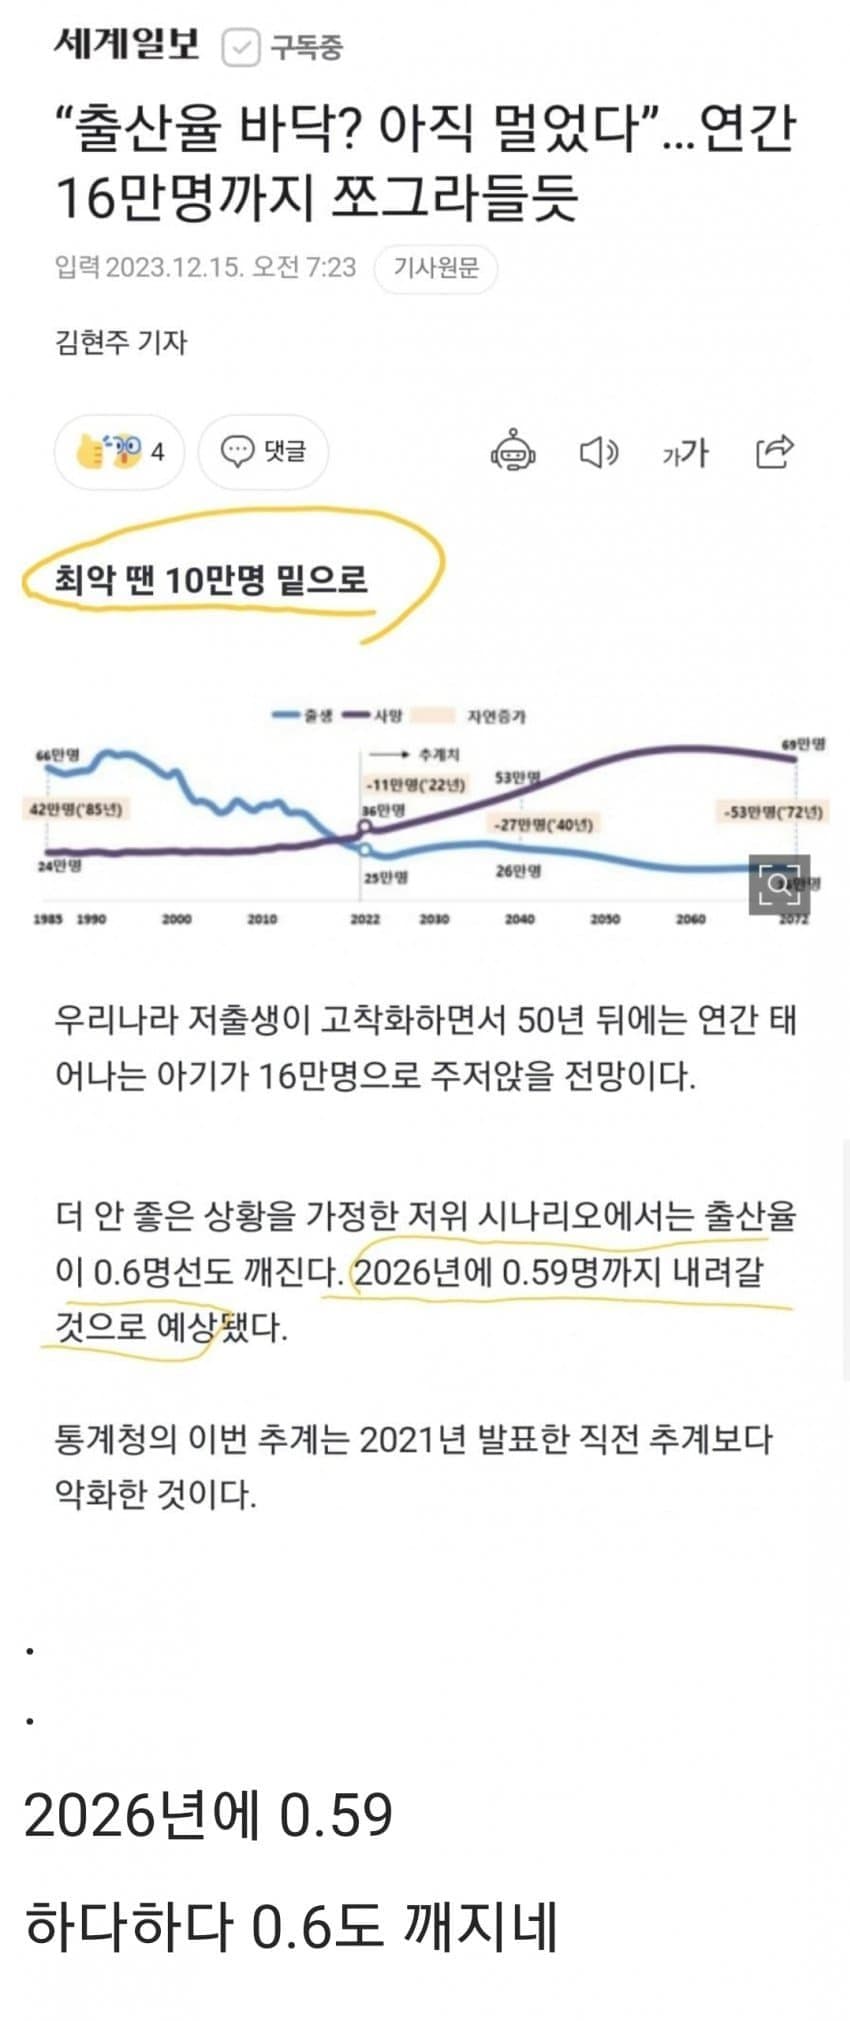 통계청 피셜 2026년 예상 출산율